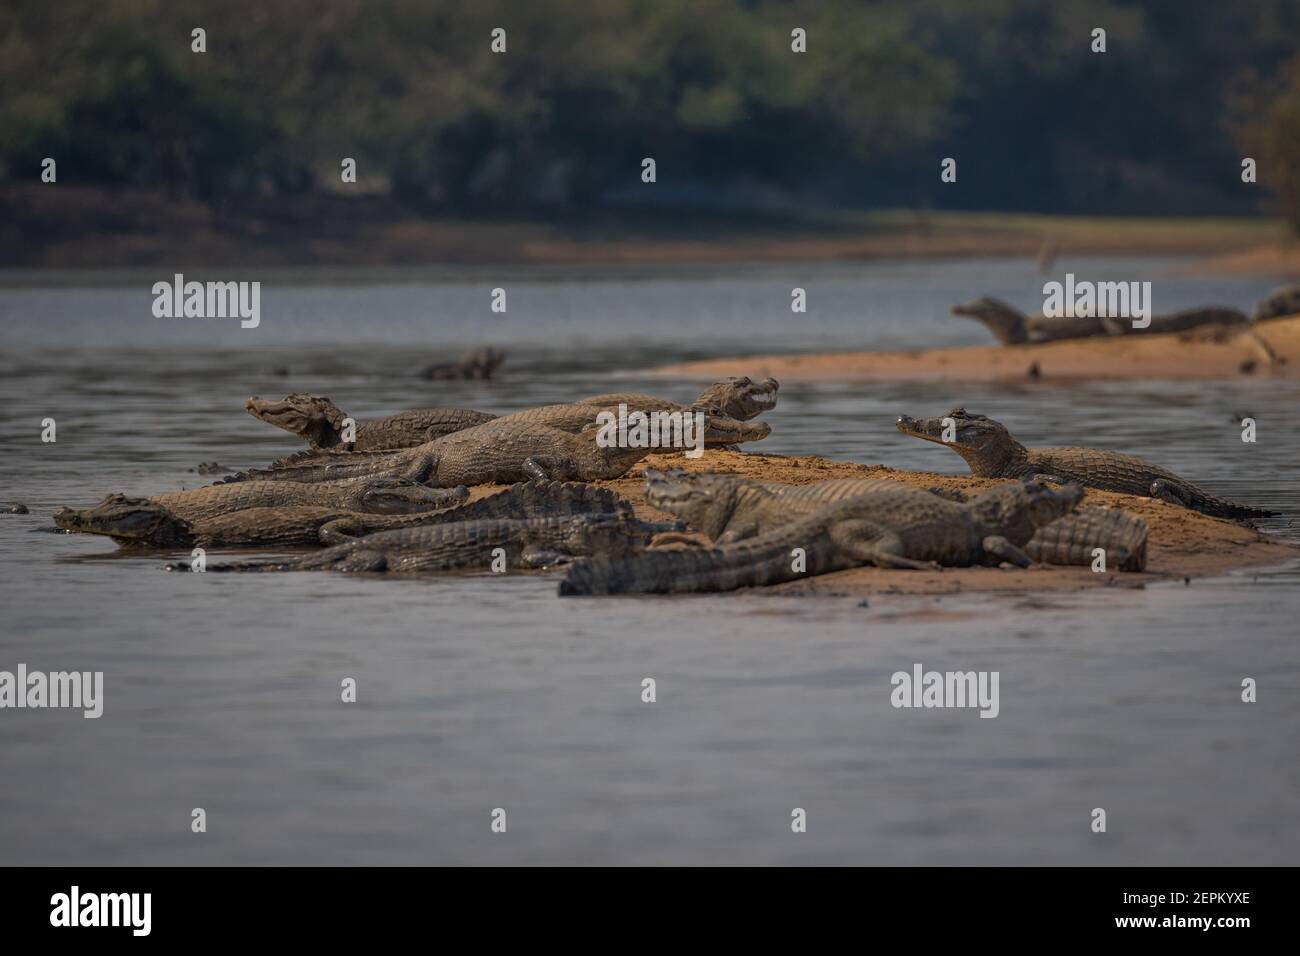 A caiman at Fazenda Barranco Alto, Mato Grosso do Sul, Brazil. Stock Photo